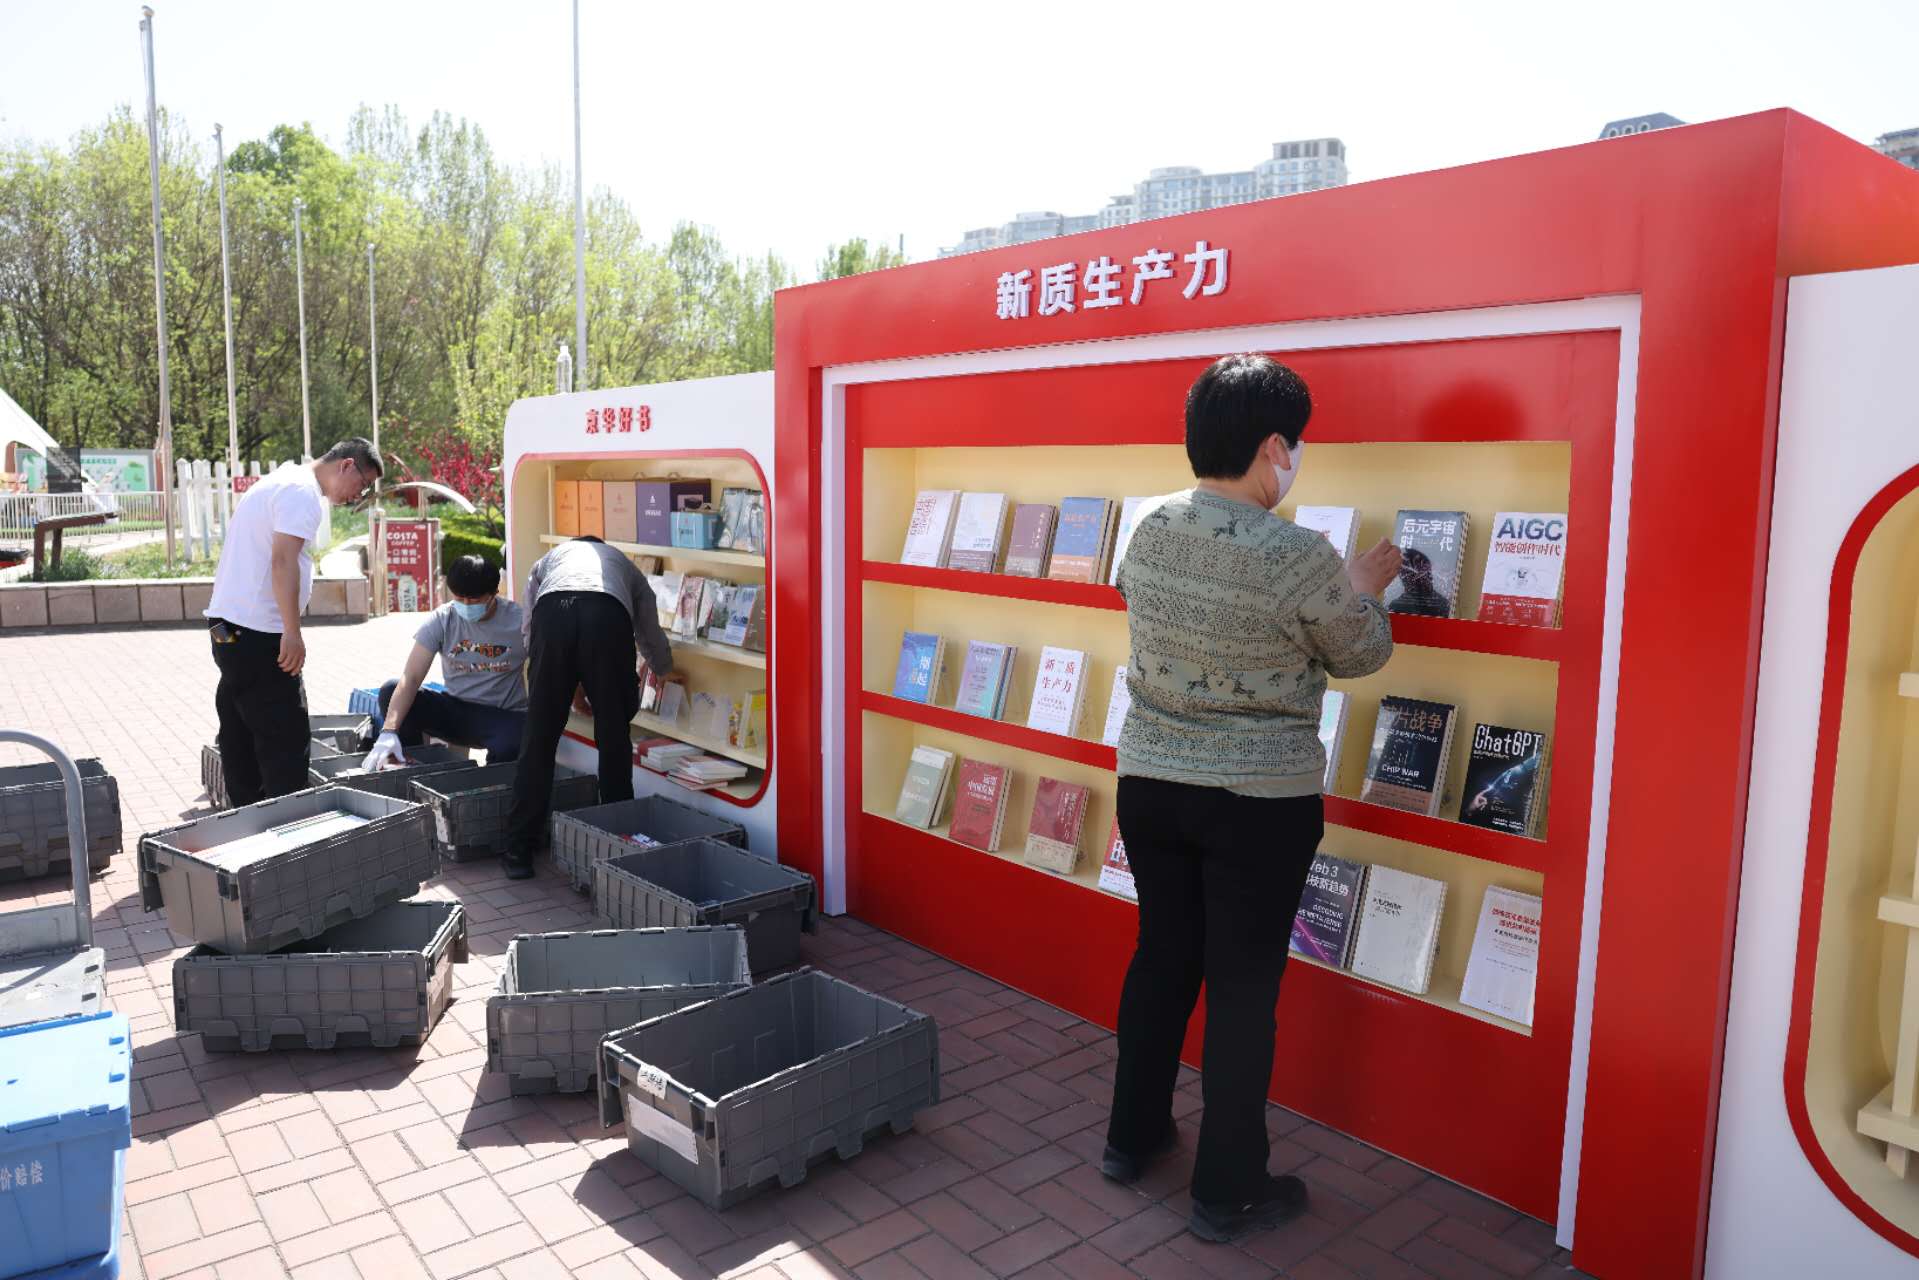 工作人員在擺放「新質生產力」的相關書籍。新京報記者 浦峰 攝